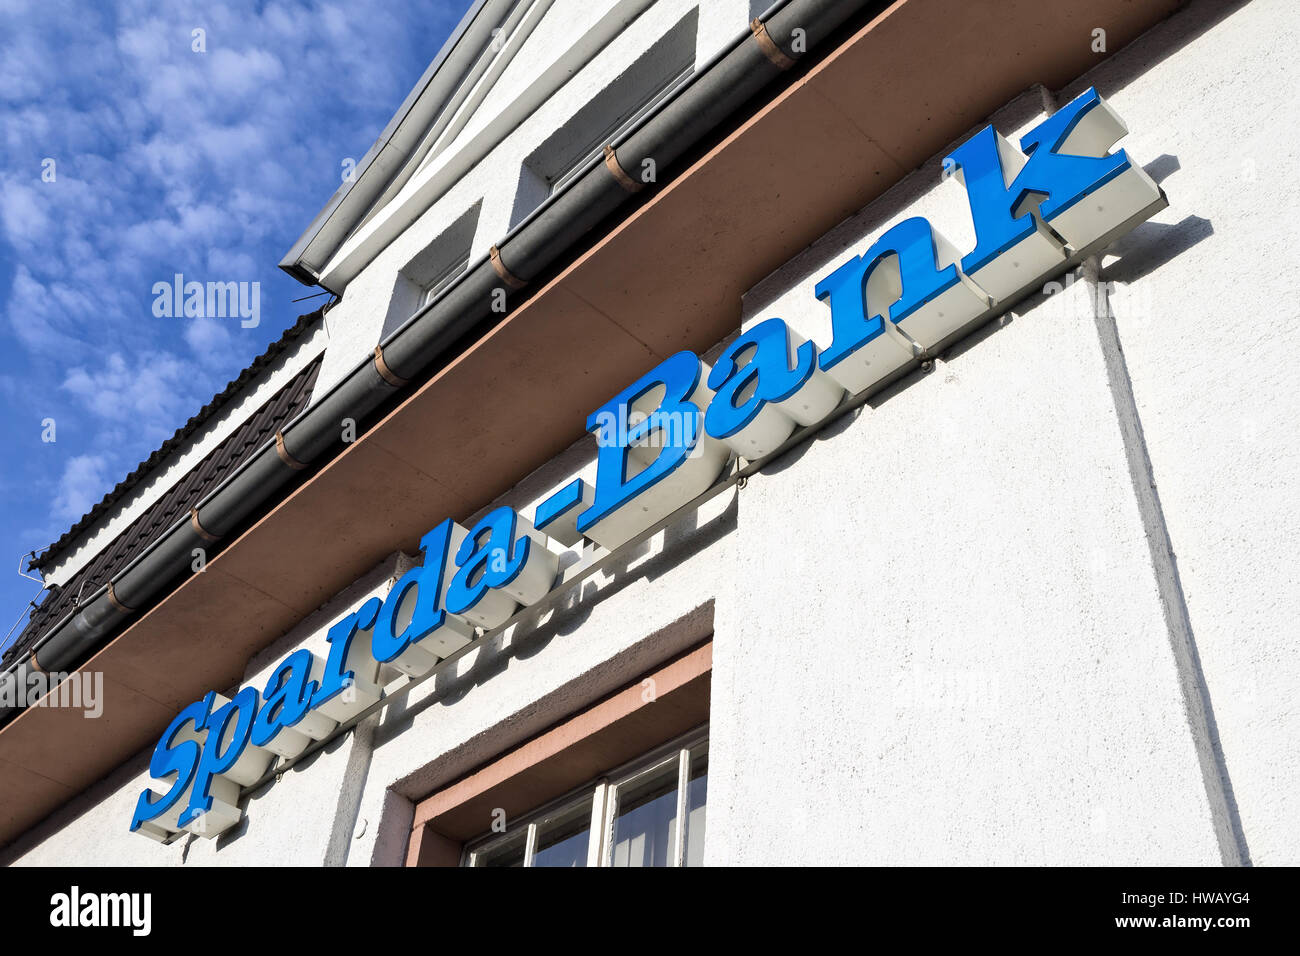 Sparda-Bank rama. Sparda-Bank alemán es un banco cooperativo y que tradicionalmente se ha centrado en banca privada. Foto de stock